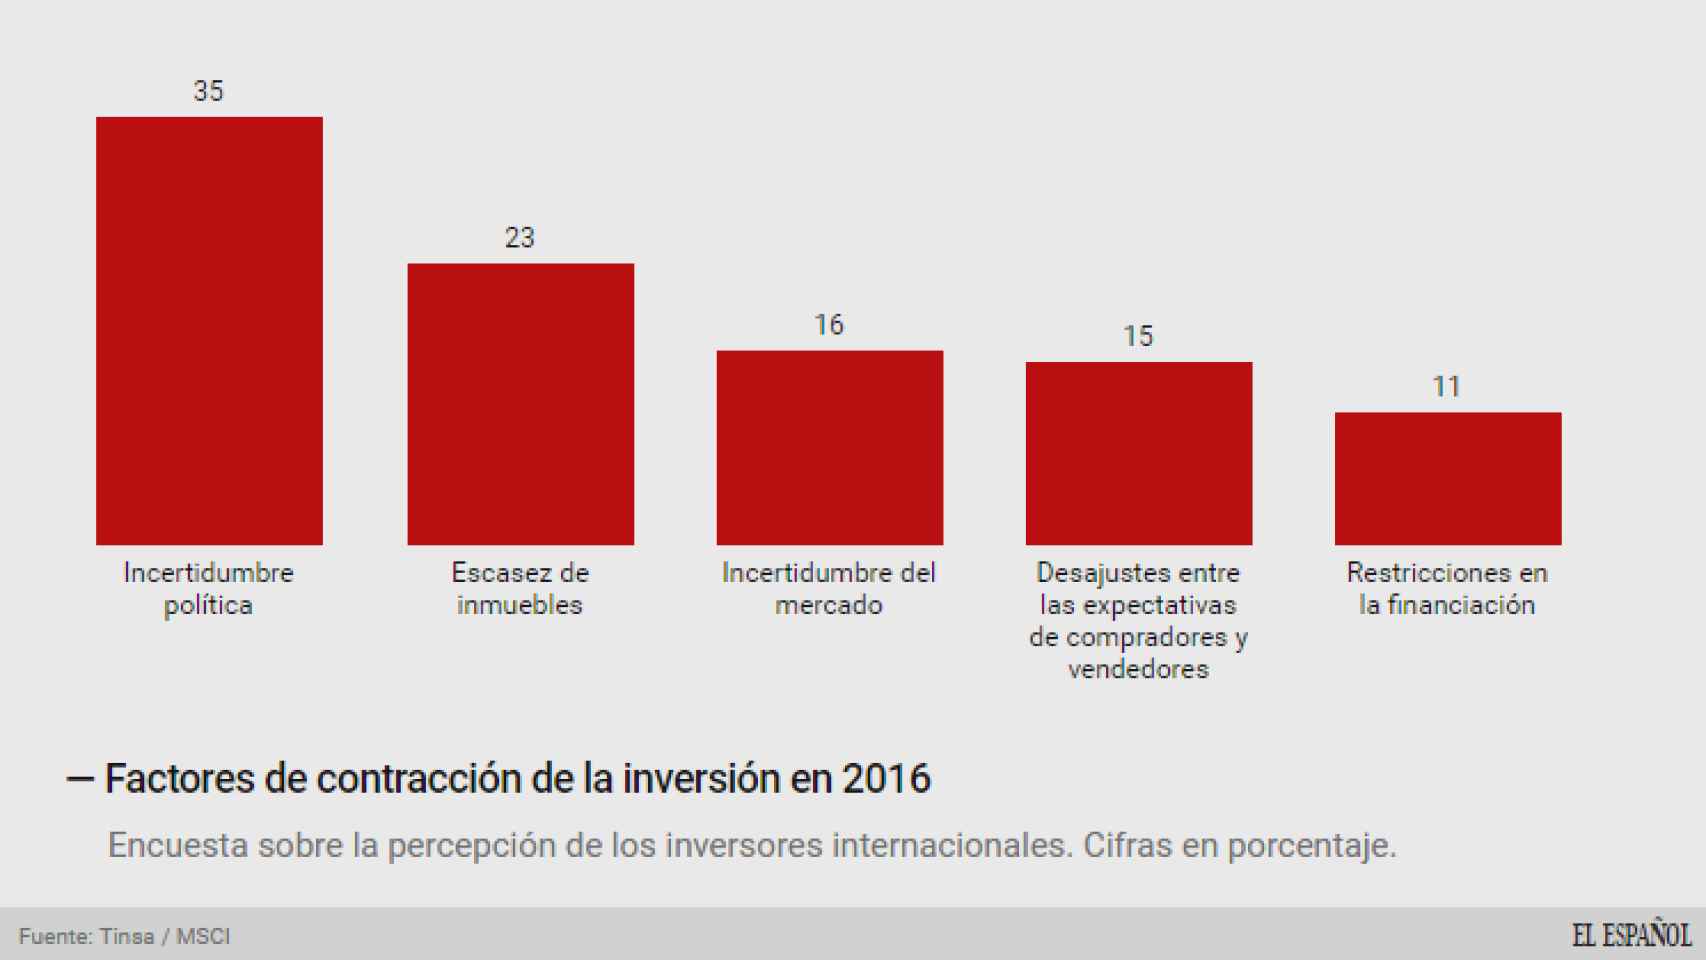 Riesgos que perciben los inversores en el mercado inmobiliario español en 2016.